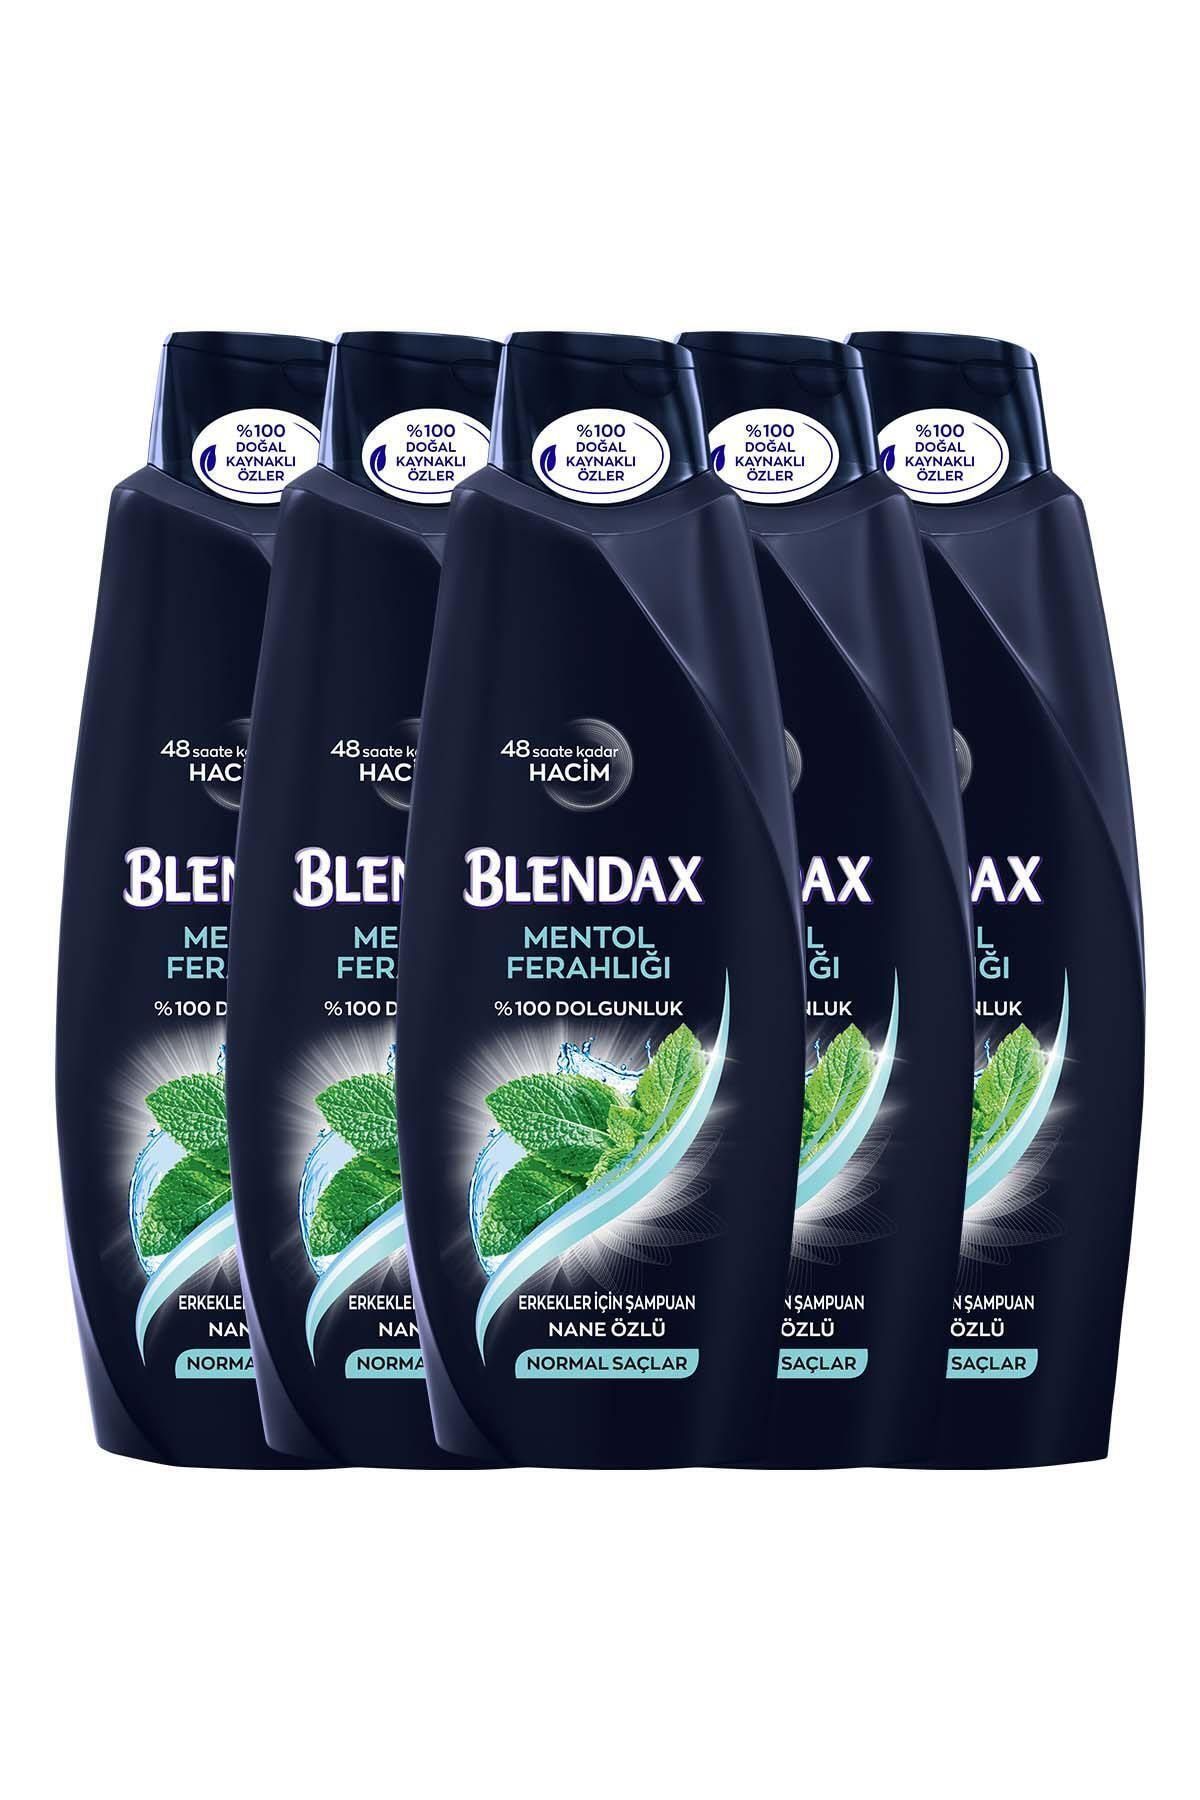 Blendax Erkekler İçin Mentollü Şampuan 550 ml x 5